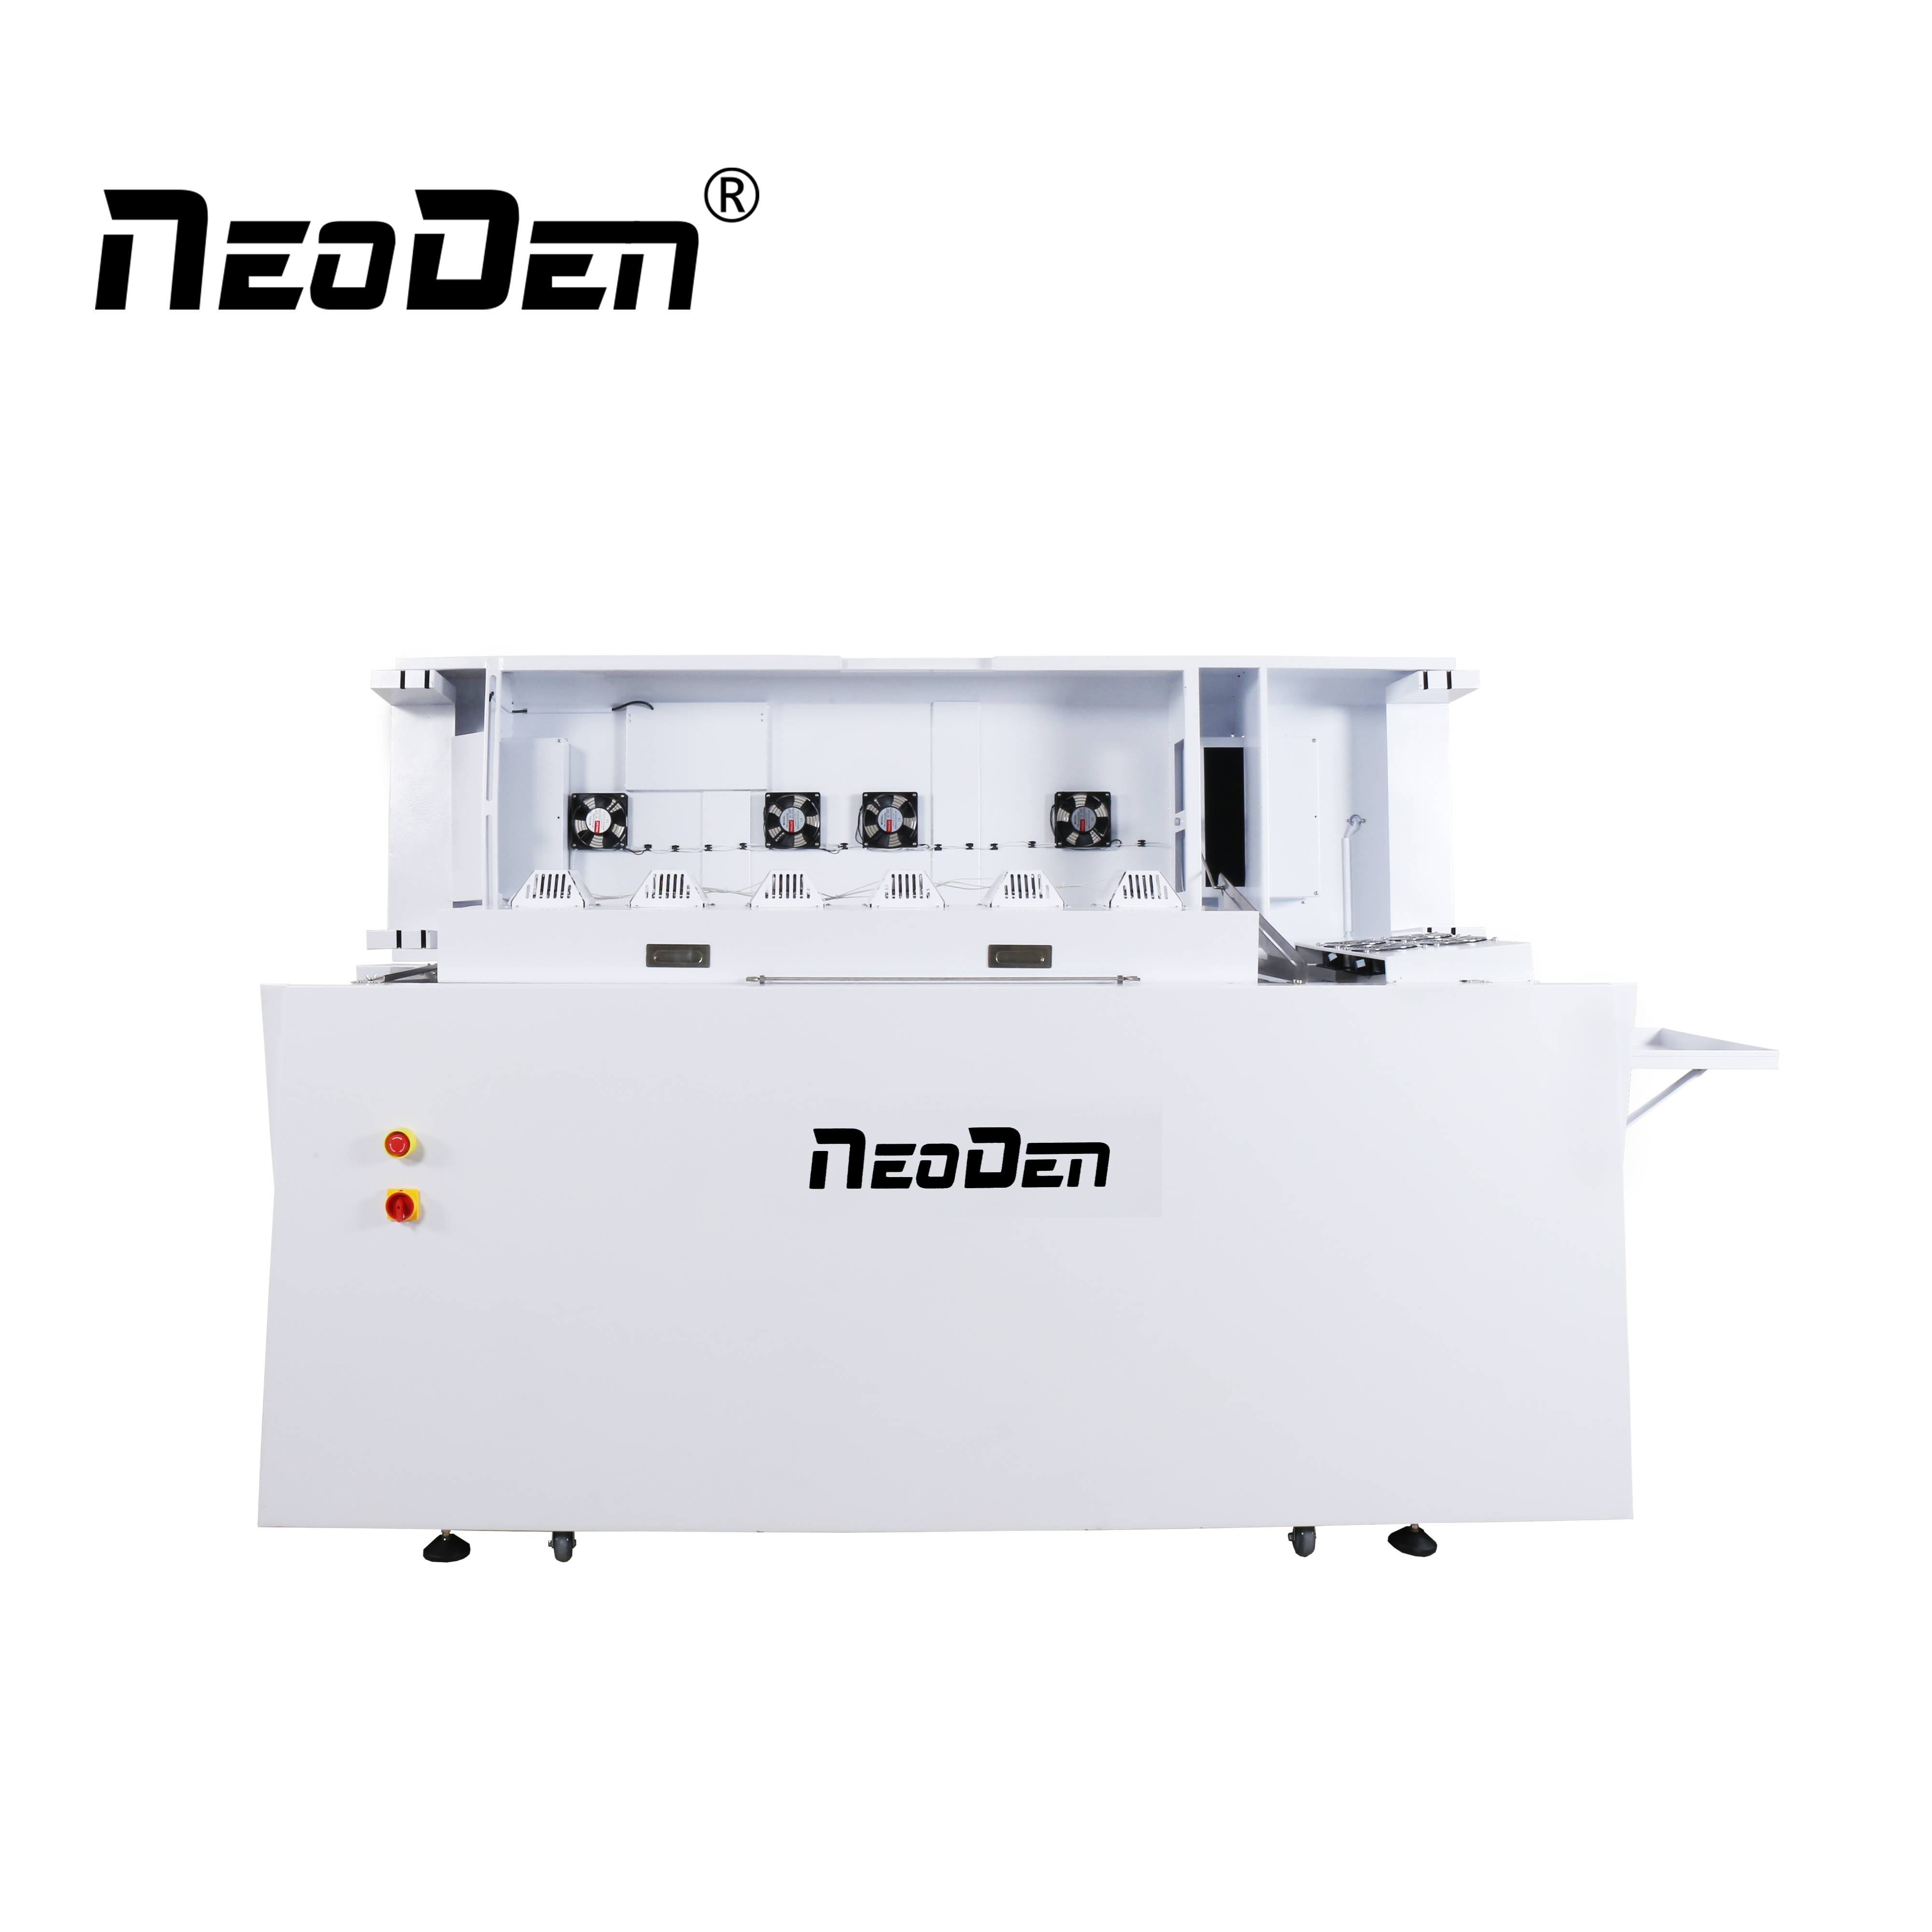 Cuál es el uso de la estación de soldadura? - Noticias industriales -  Noticias - Hangzhou NeoDen Technology Co., Ltd